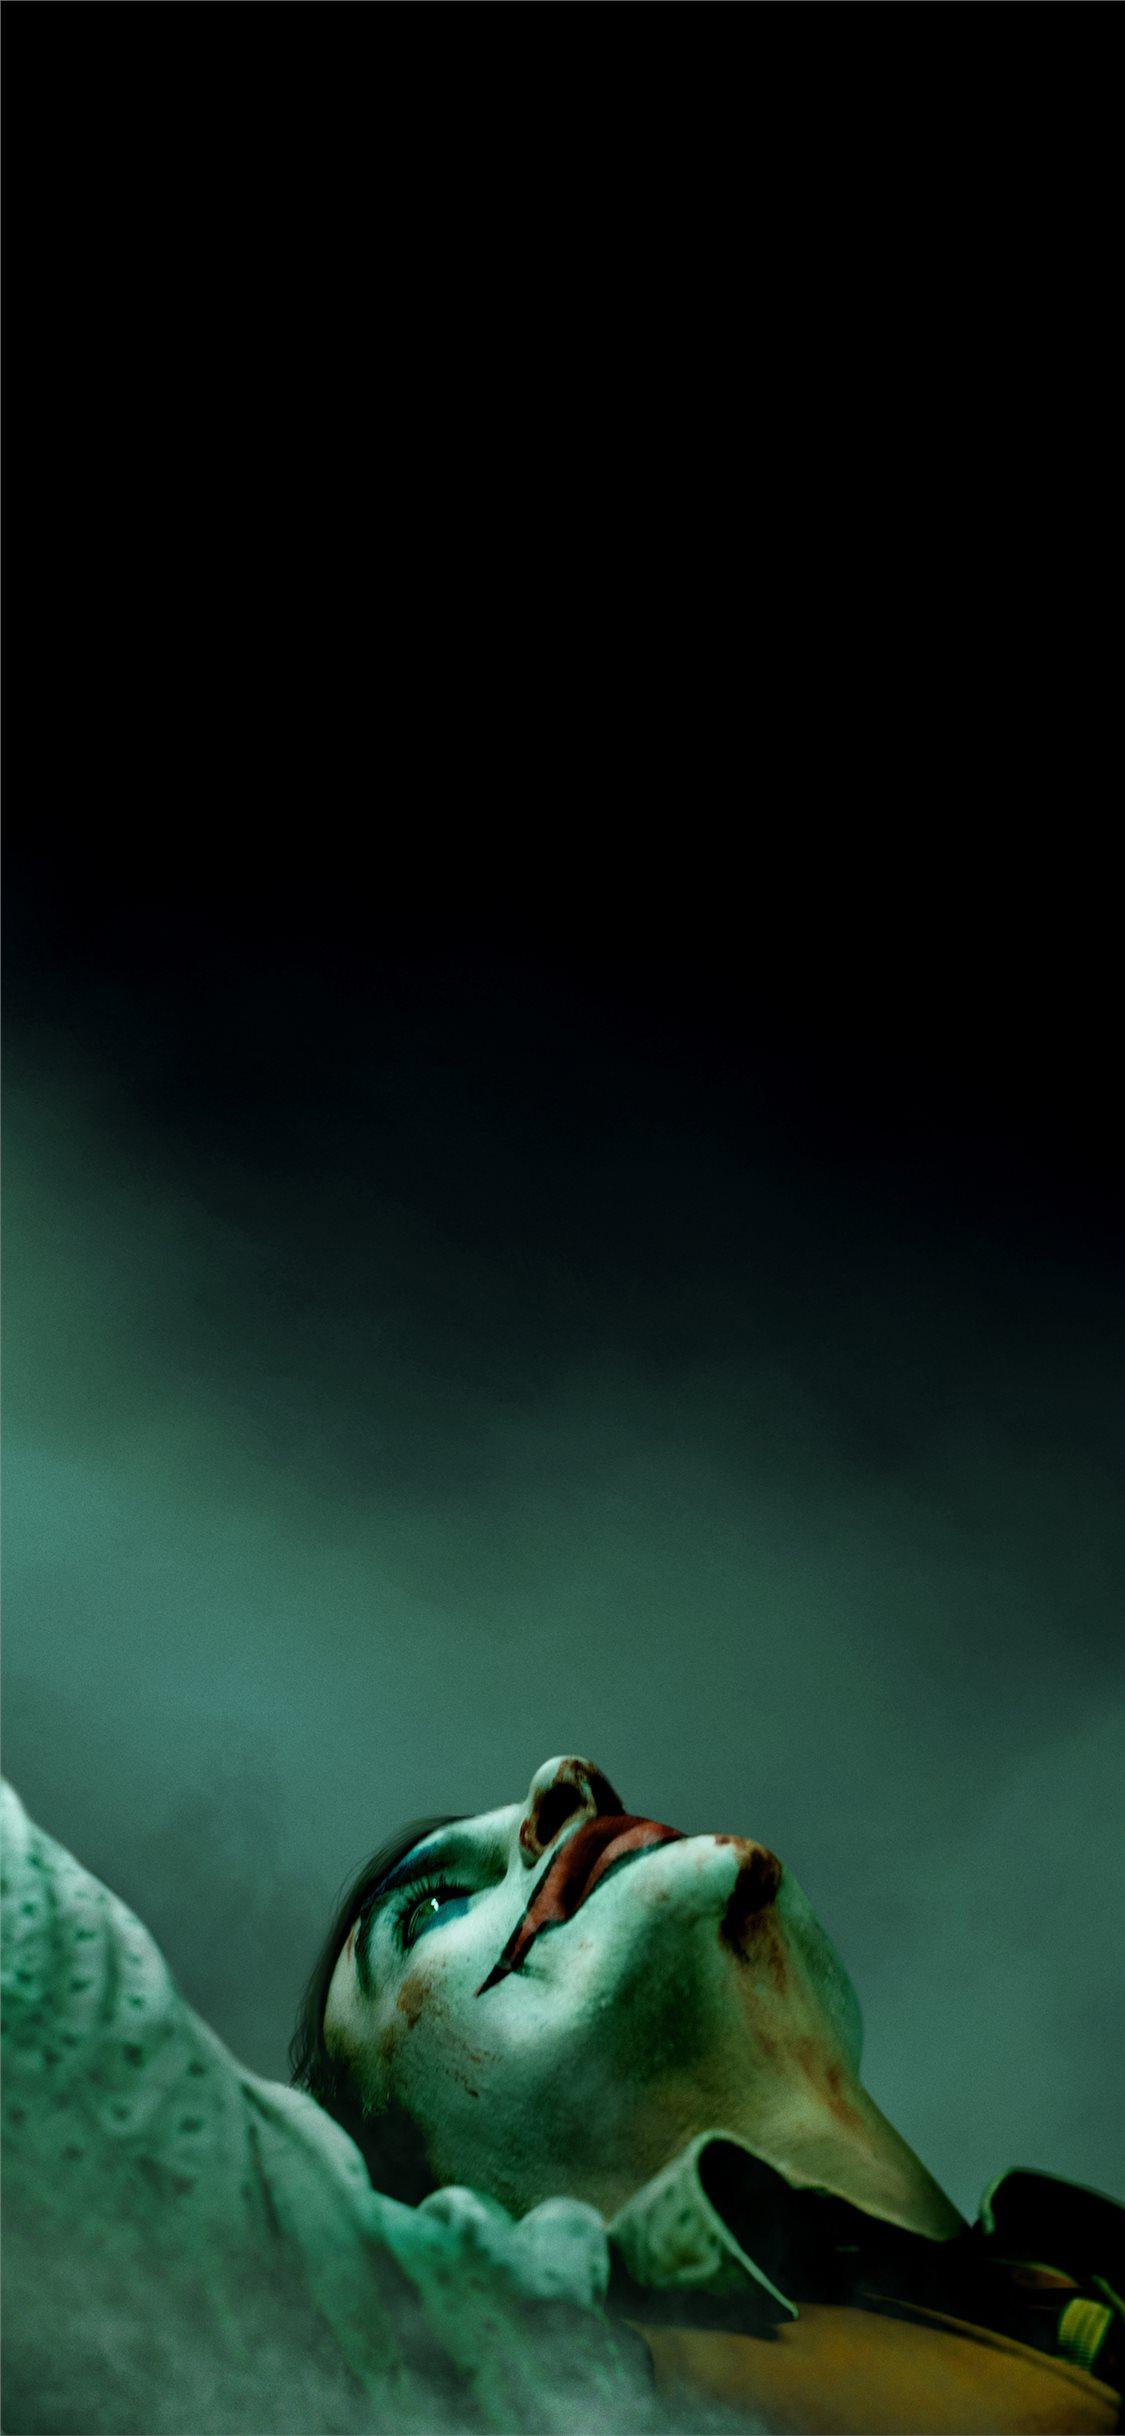 Best Supervillain iPhone X Wallpaper HD [2020]